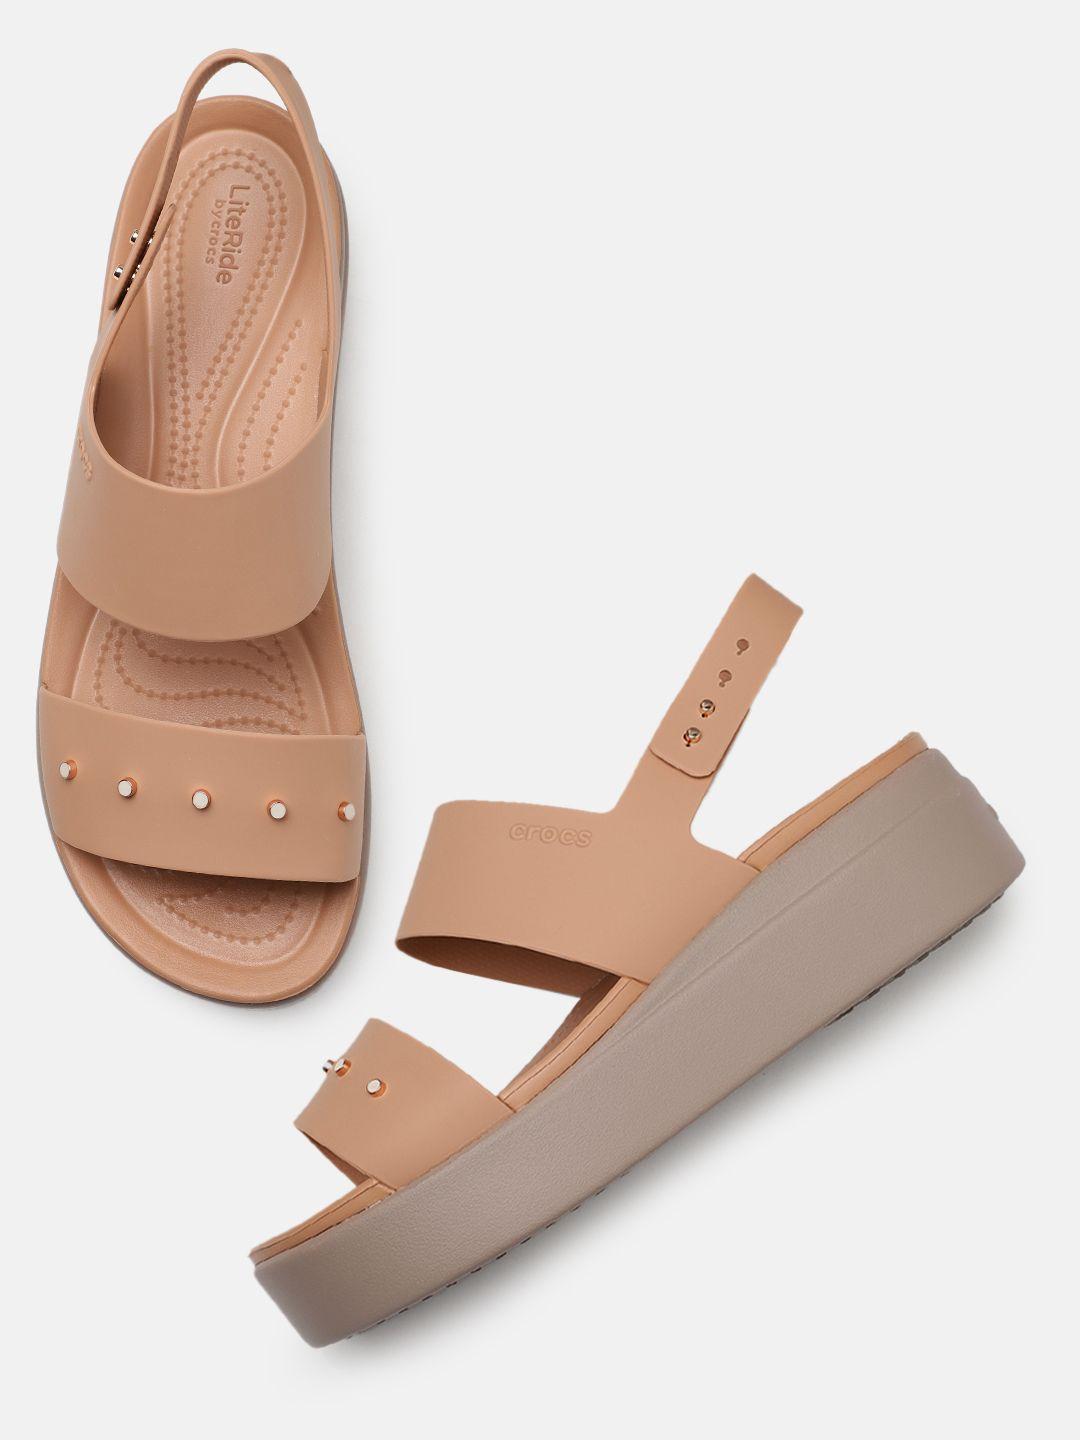 crocs-studded-comfort-heels